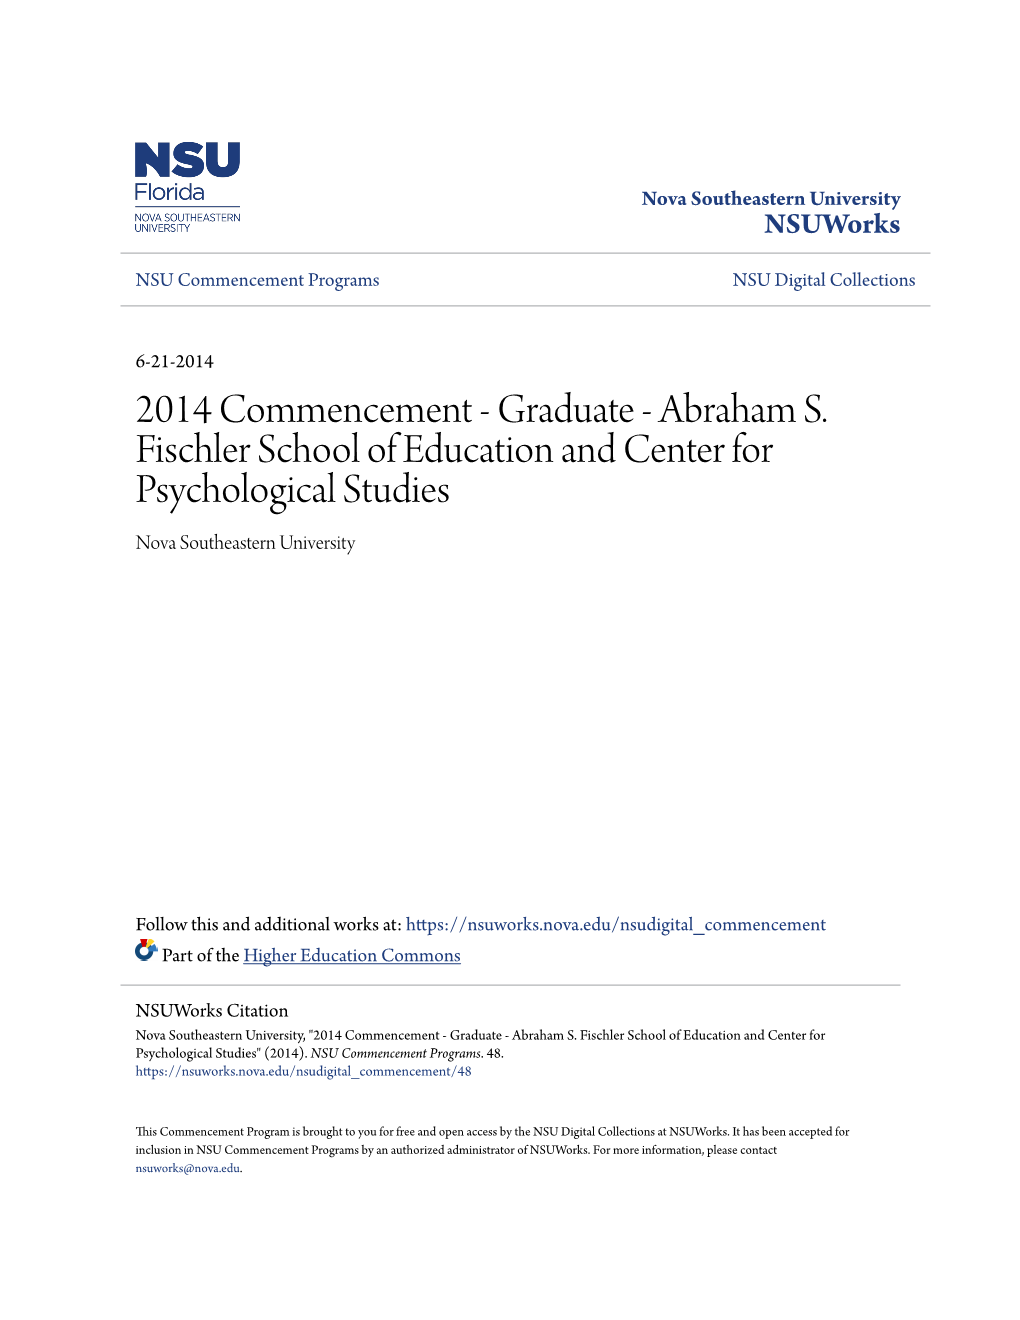 2014 Commencement - Graduate - Abraham S